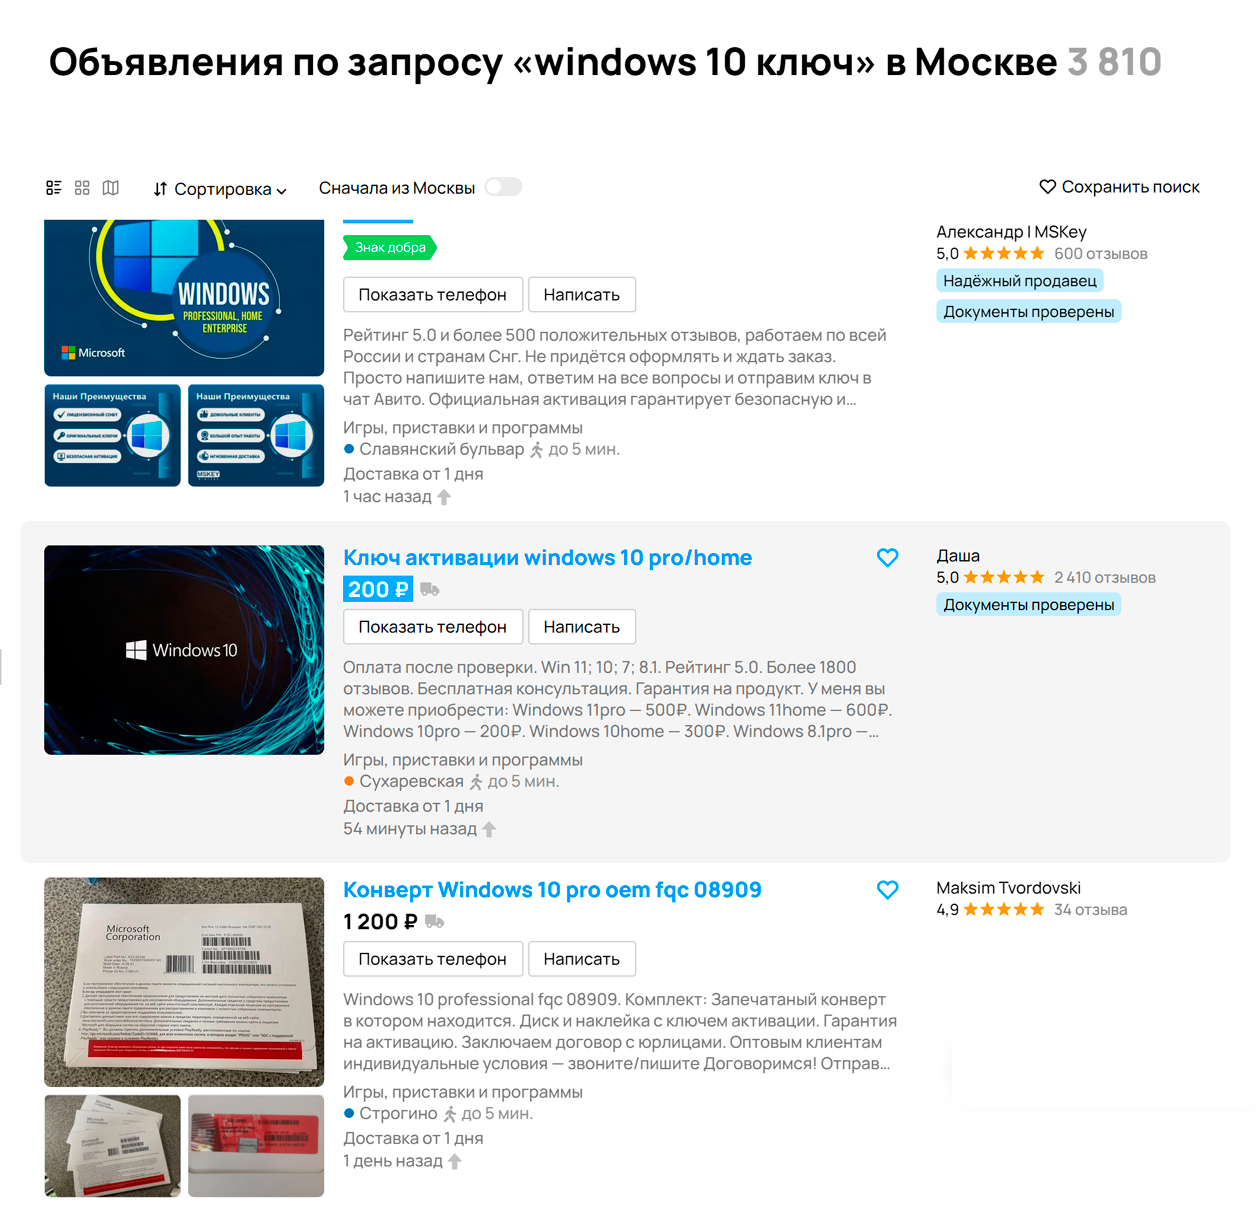 В Москве больше 3000 объявлений о продаже ключей Windows 10, но регион не имеет значения — вам все равно пришлют ключ текстом. Источник: avito.ru